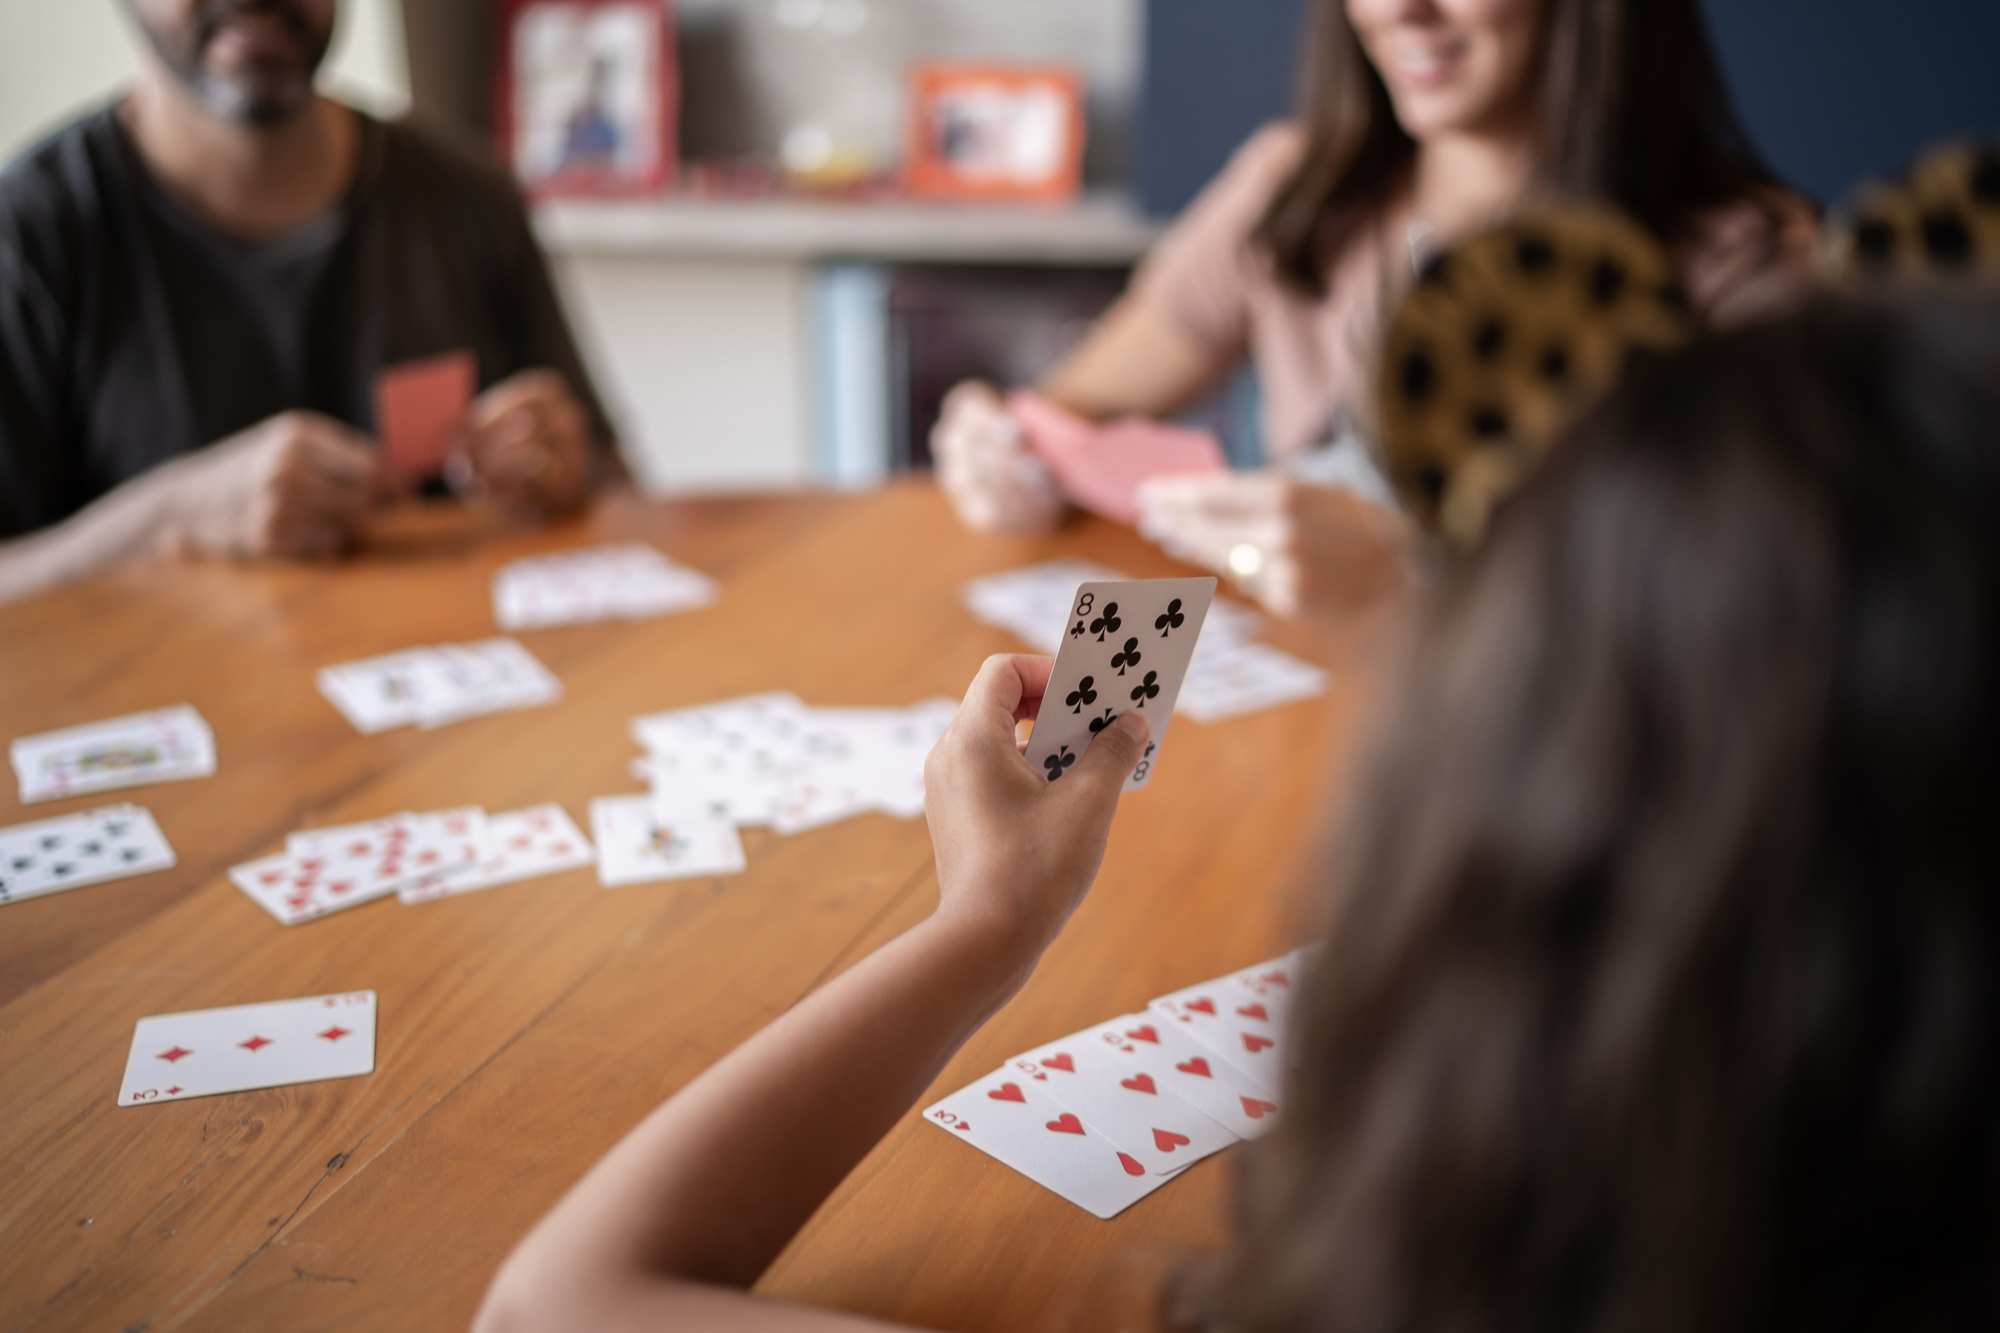 Personer spelar kort vid ett träbord